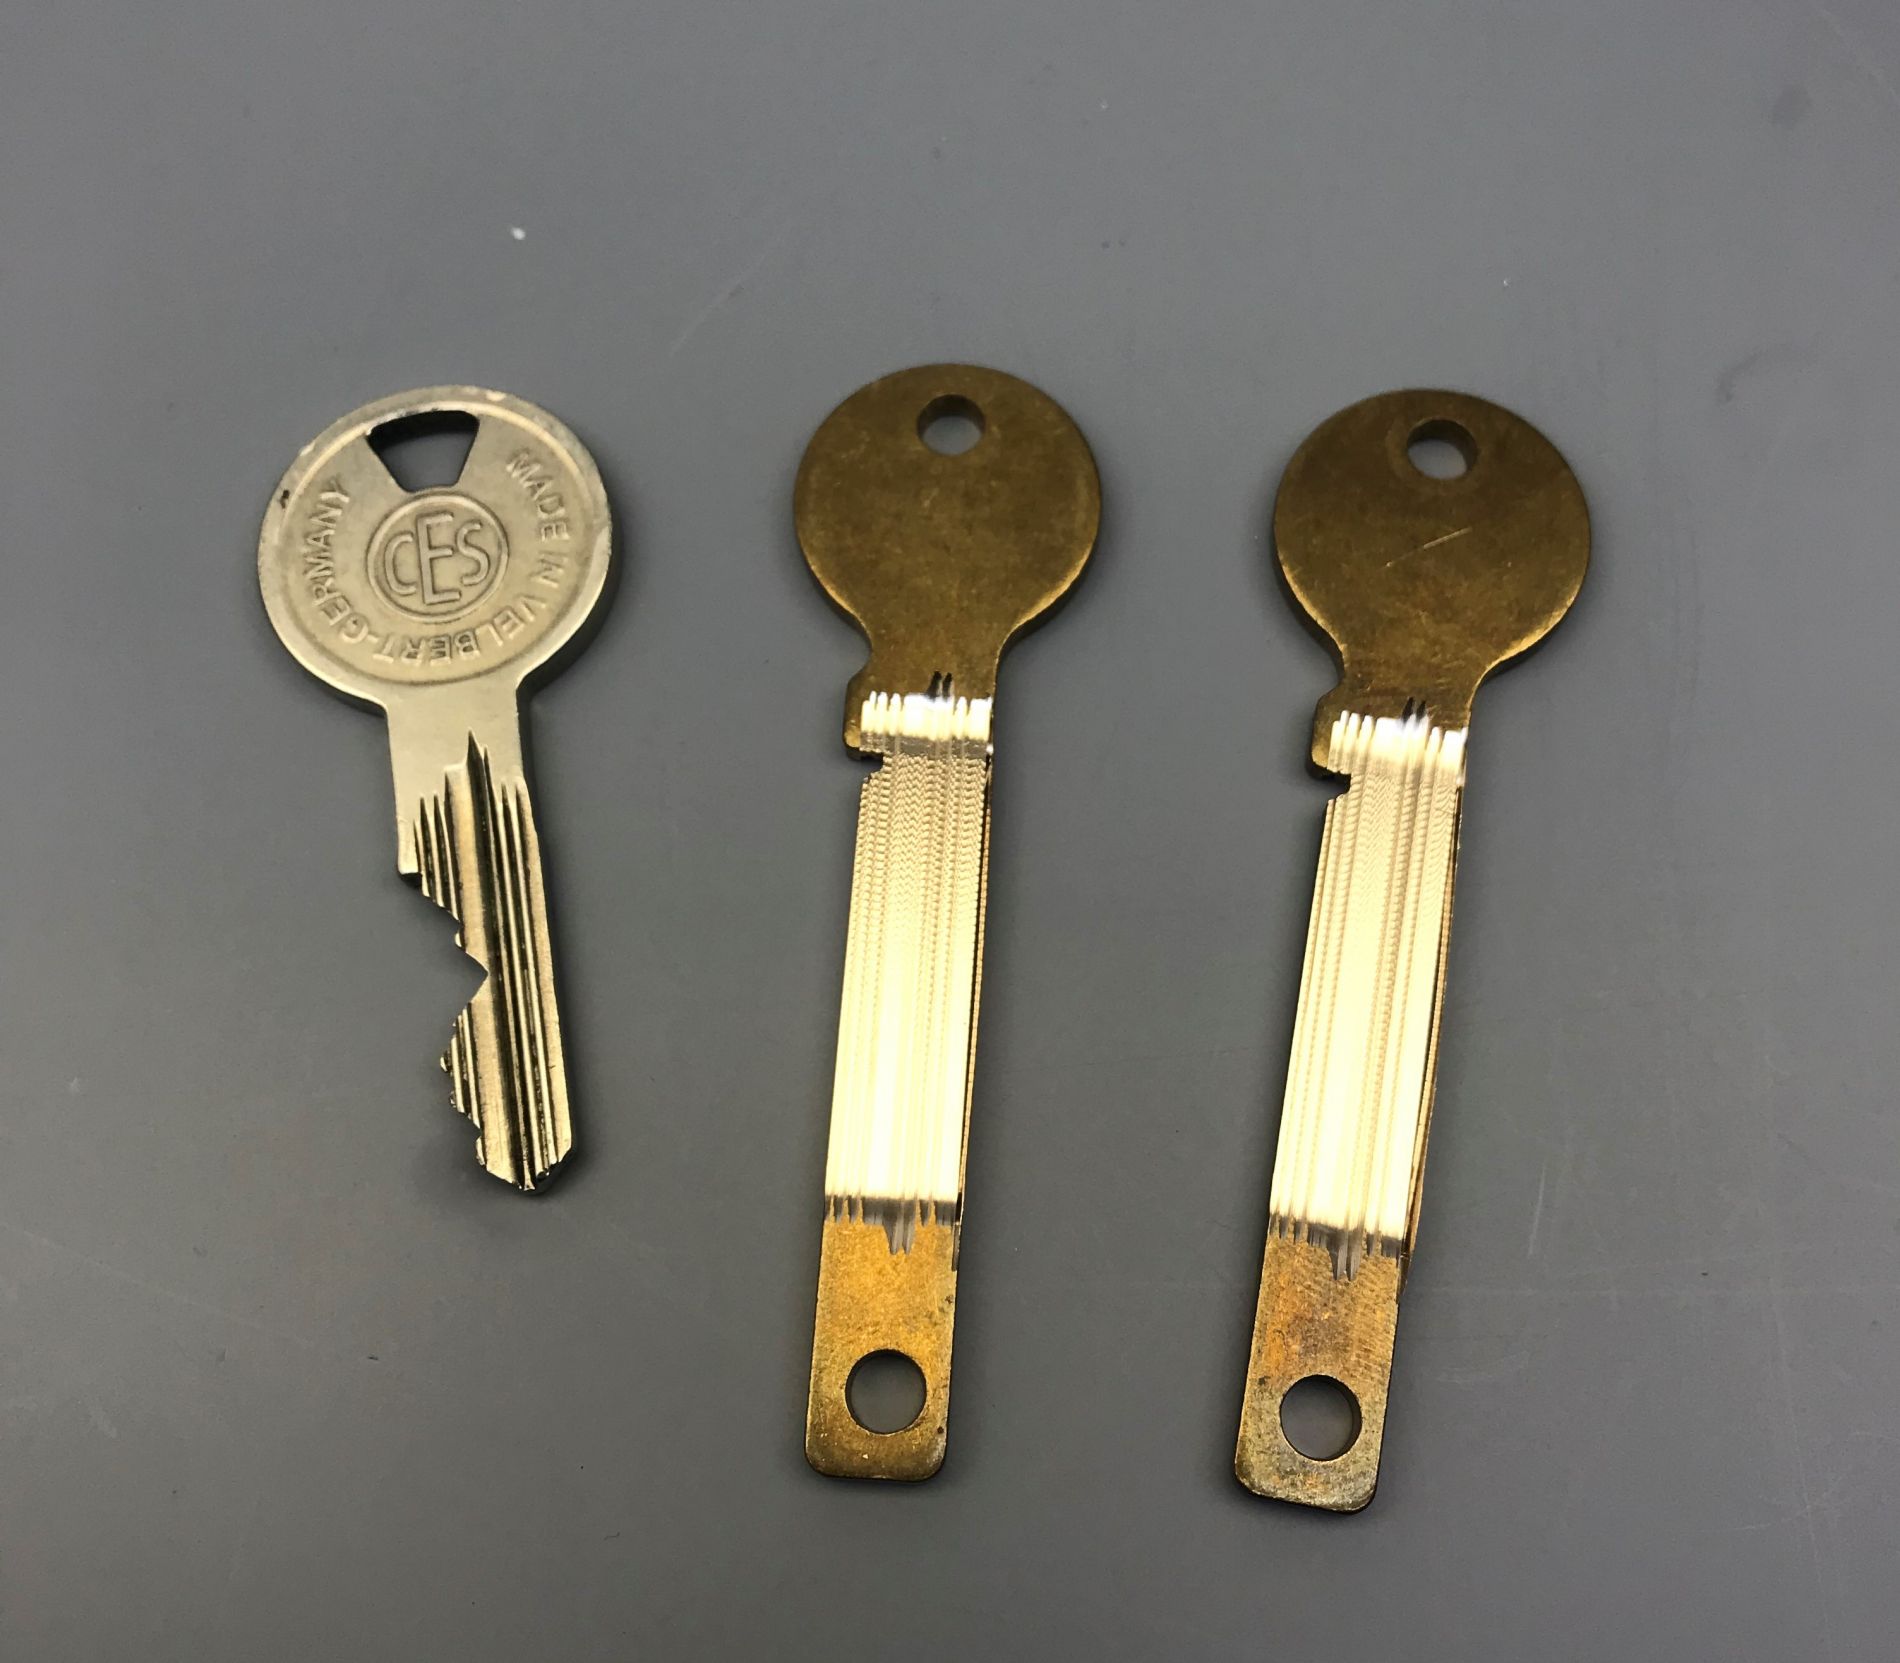 Jak kopiujemy klucz firmy Ces Velbert przywieziony z Holandii?